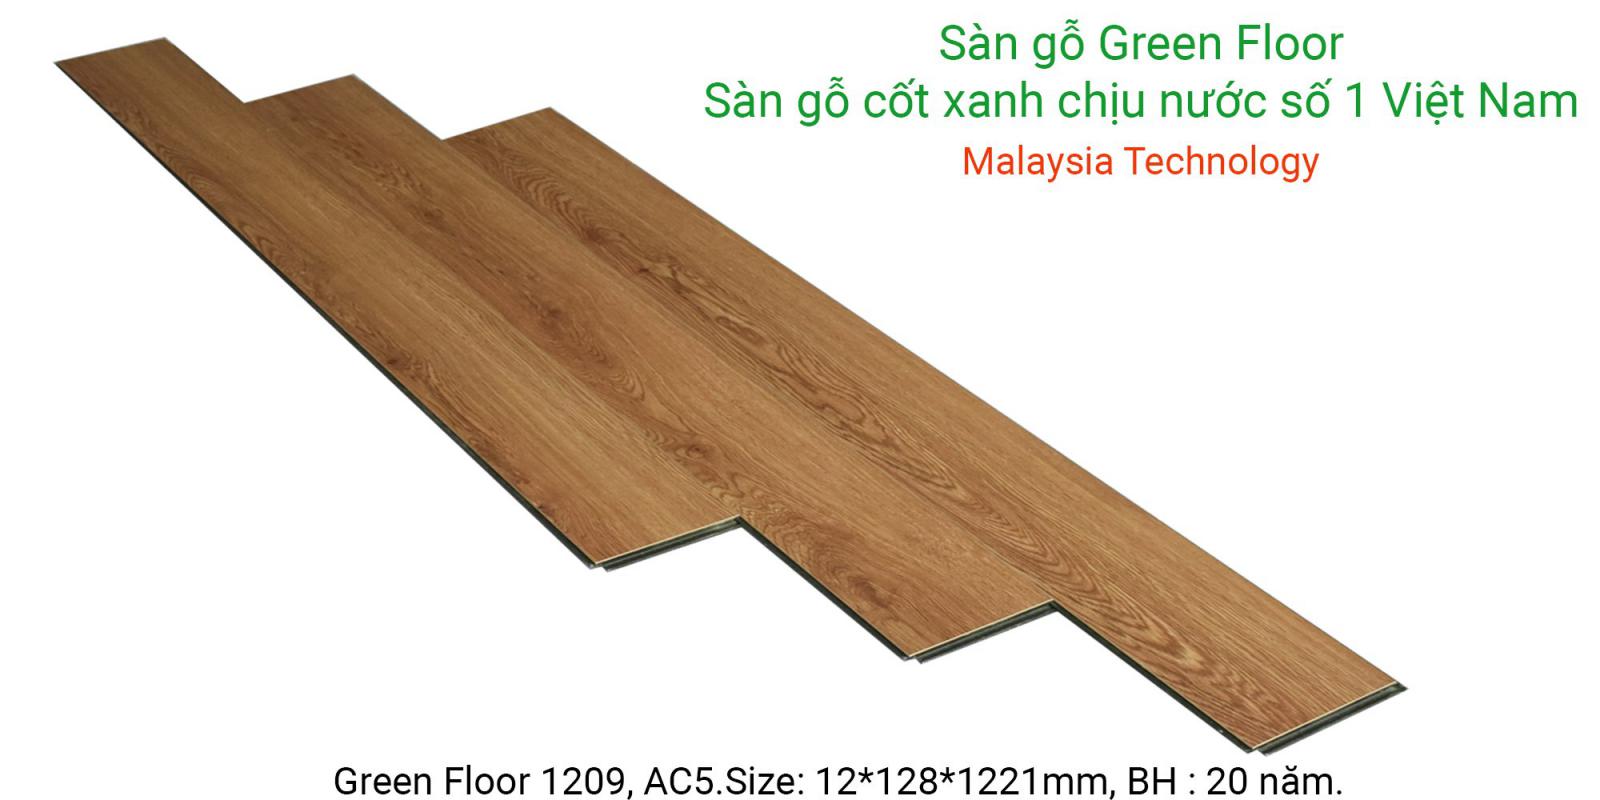 Sàn gỗ Greenfloor 1209